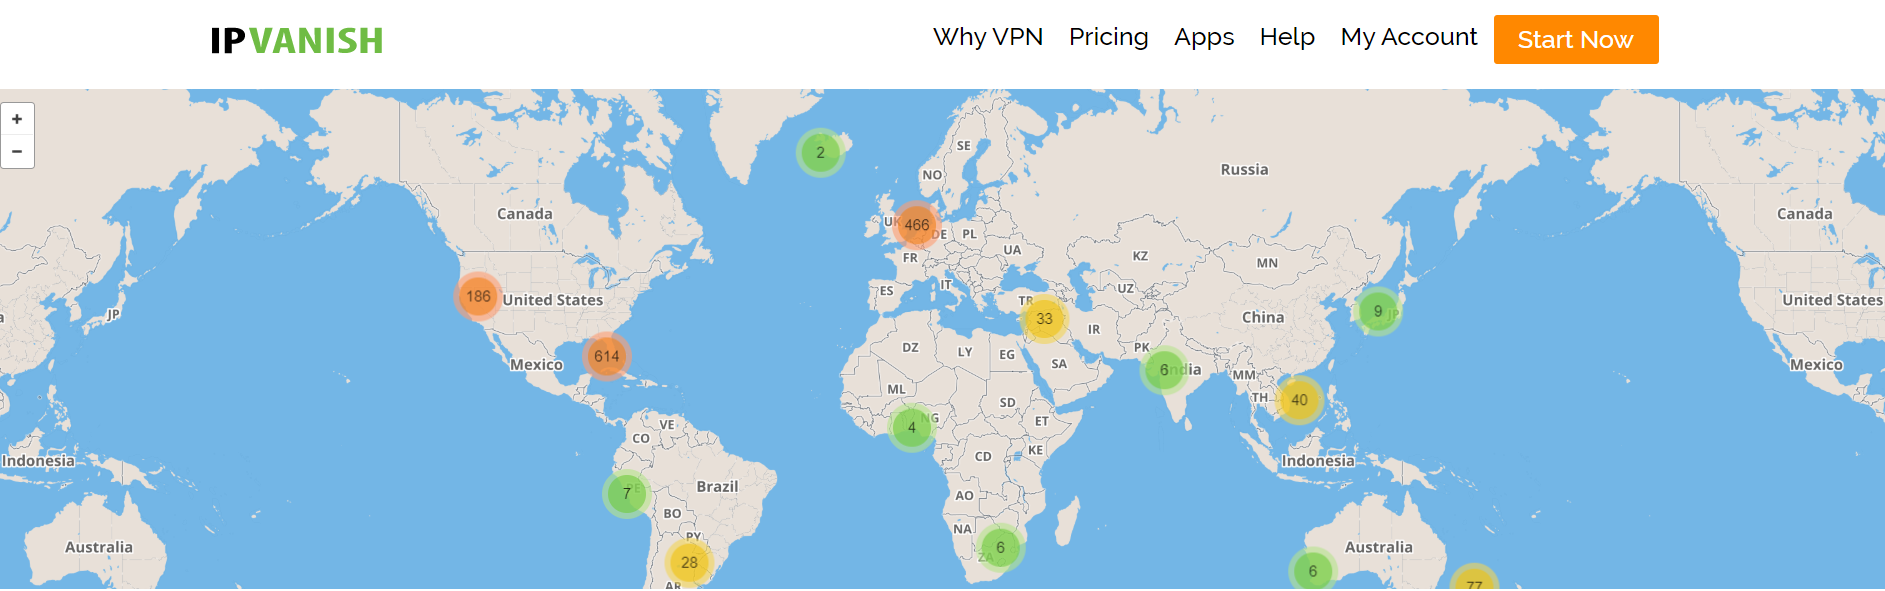 VPN Server Locations - IPVanish VPN